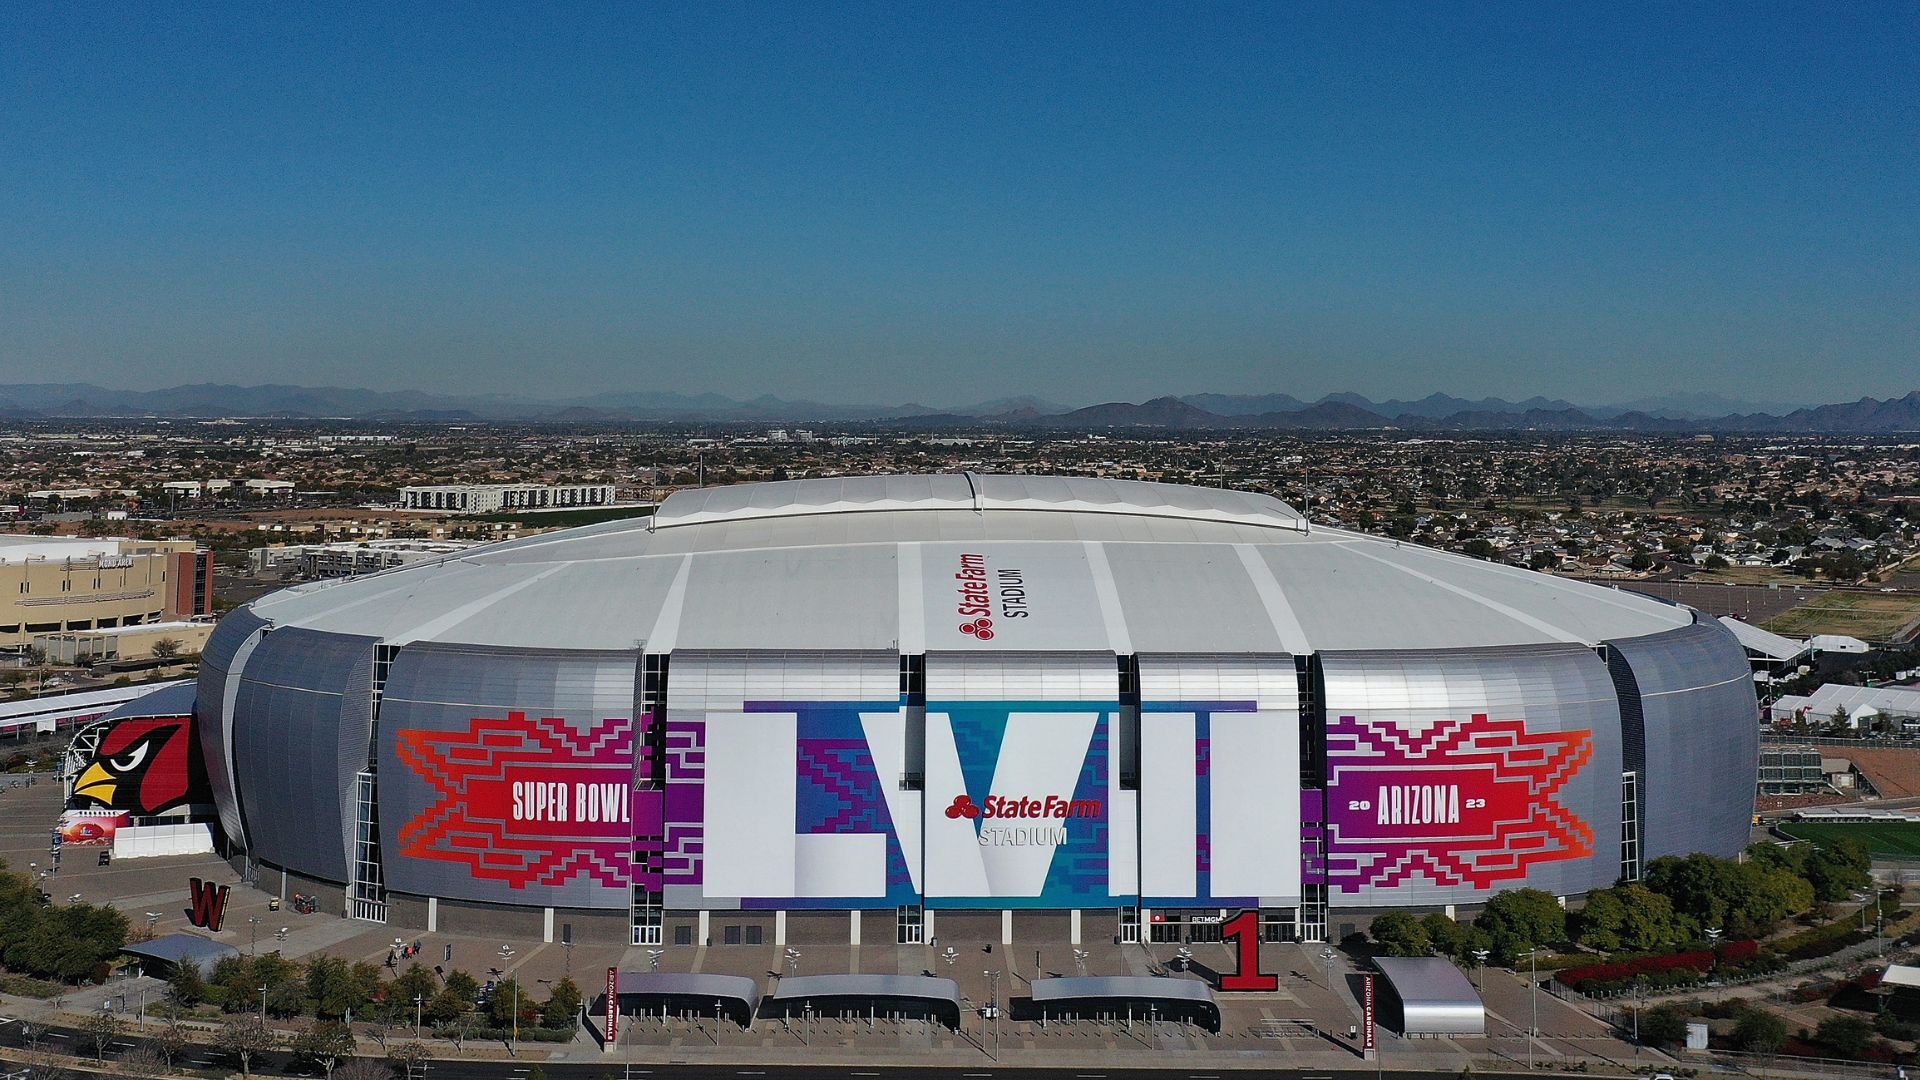 Imagem do estádio pronto para o Super Bowl LVII